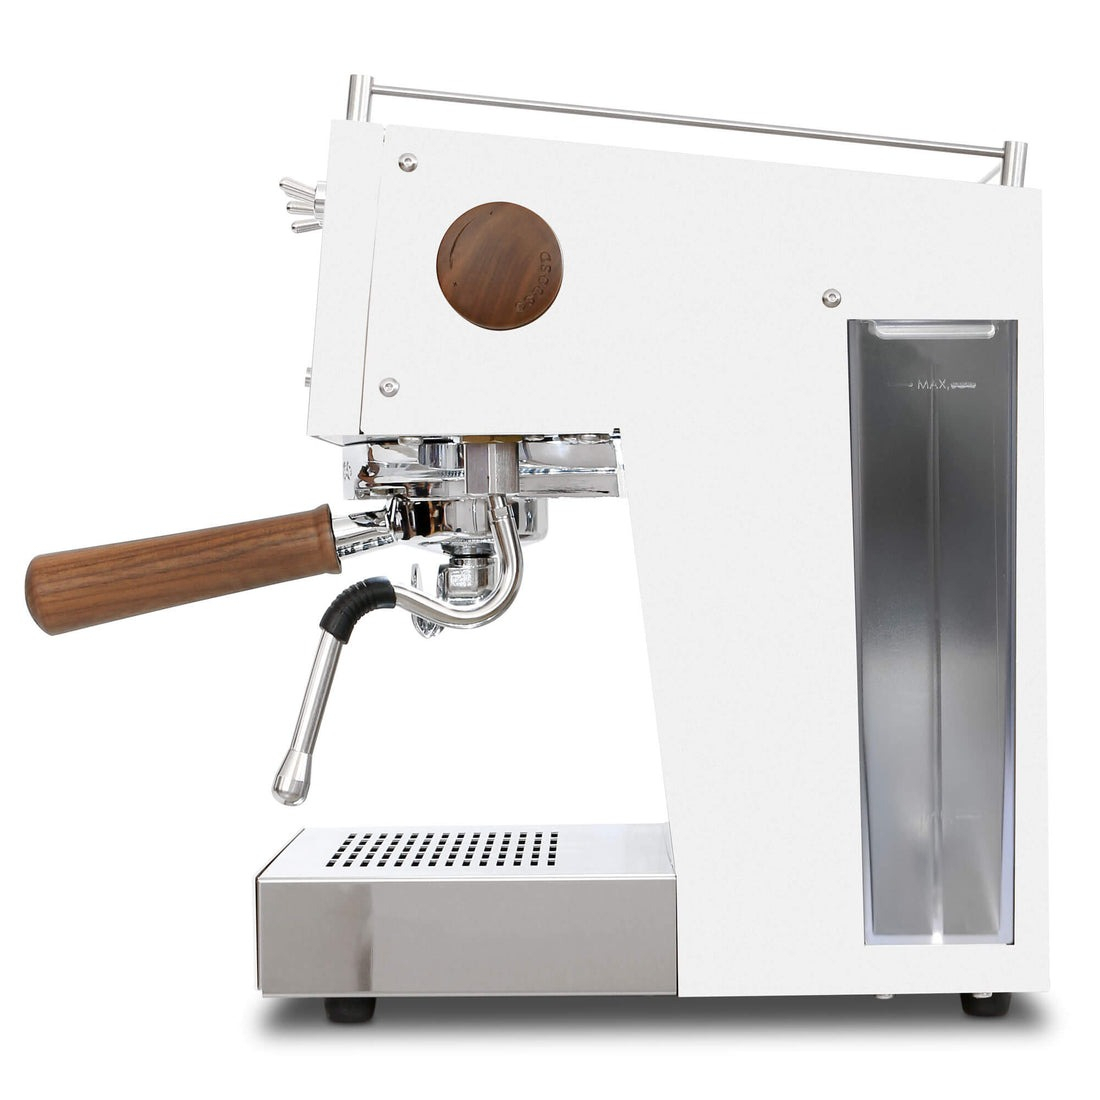 ماكينة قهوة اونو بي اي دي أبيض أيادي خشبية 1 جروب ,UNO.29, من اسكاسو|mkayn|مكاين